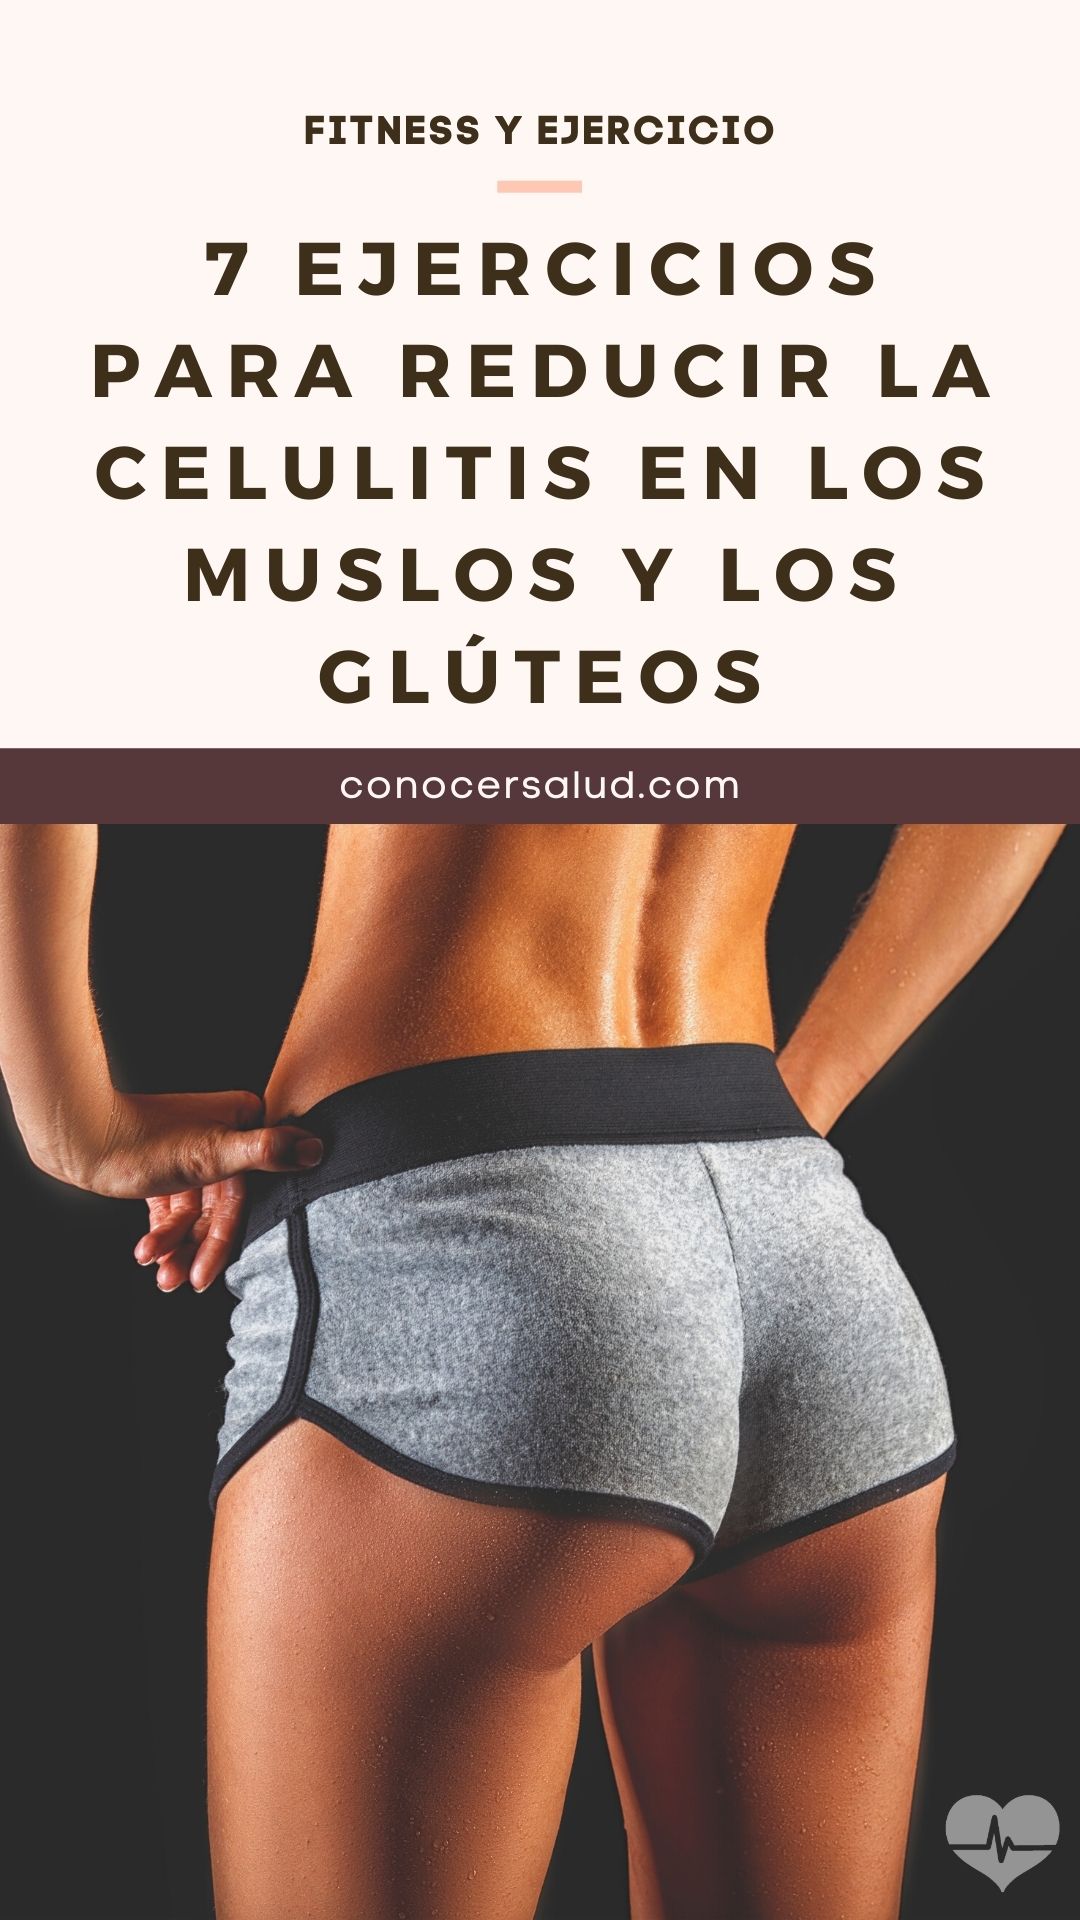 7 ejercicios para reducir la celulitis en los muslos y los glúteos